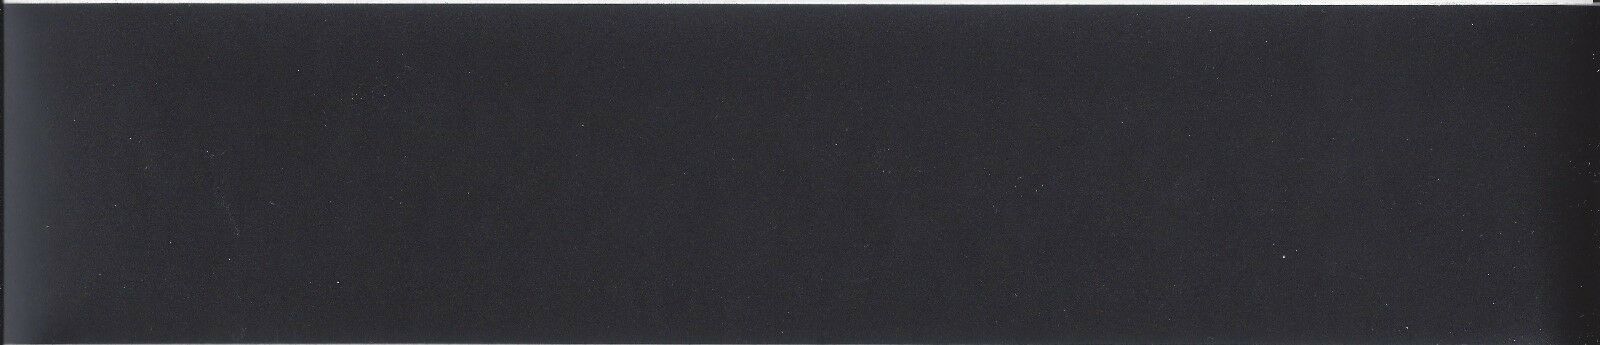 3.75" Solid Black Peel & Stick Wallpaper Border Qa4w0703